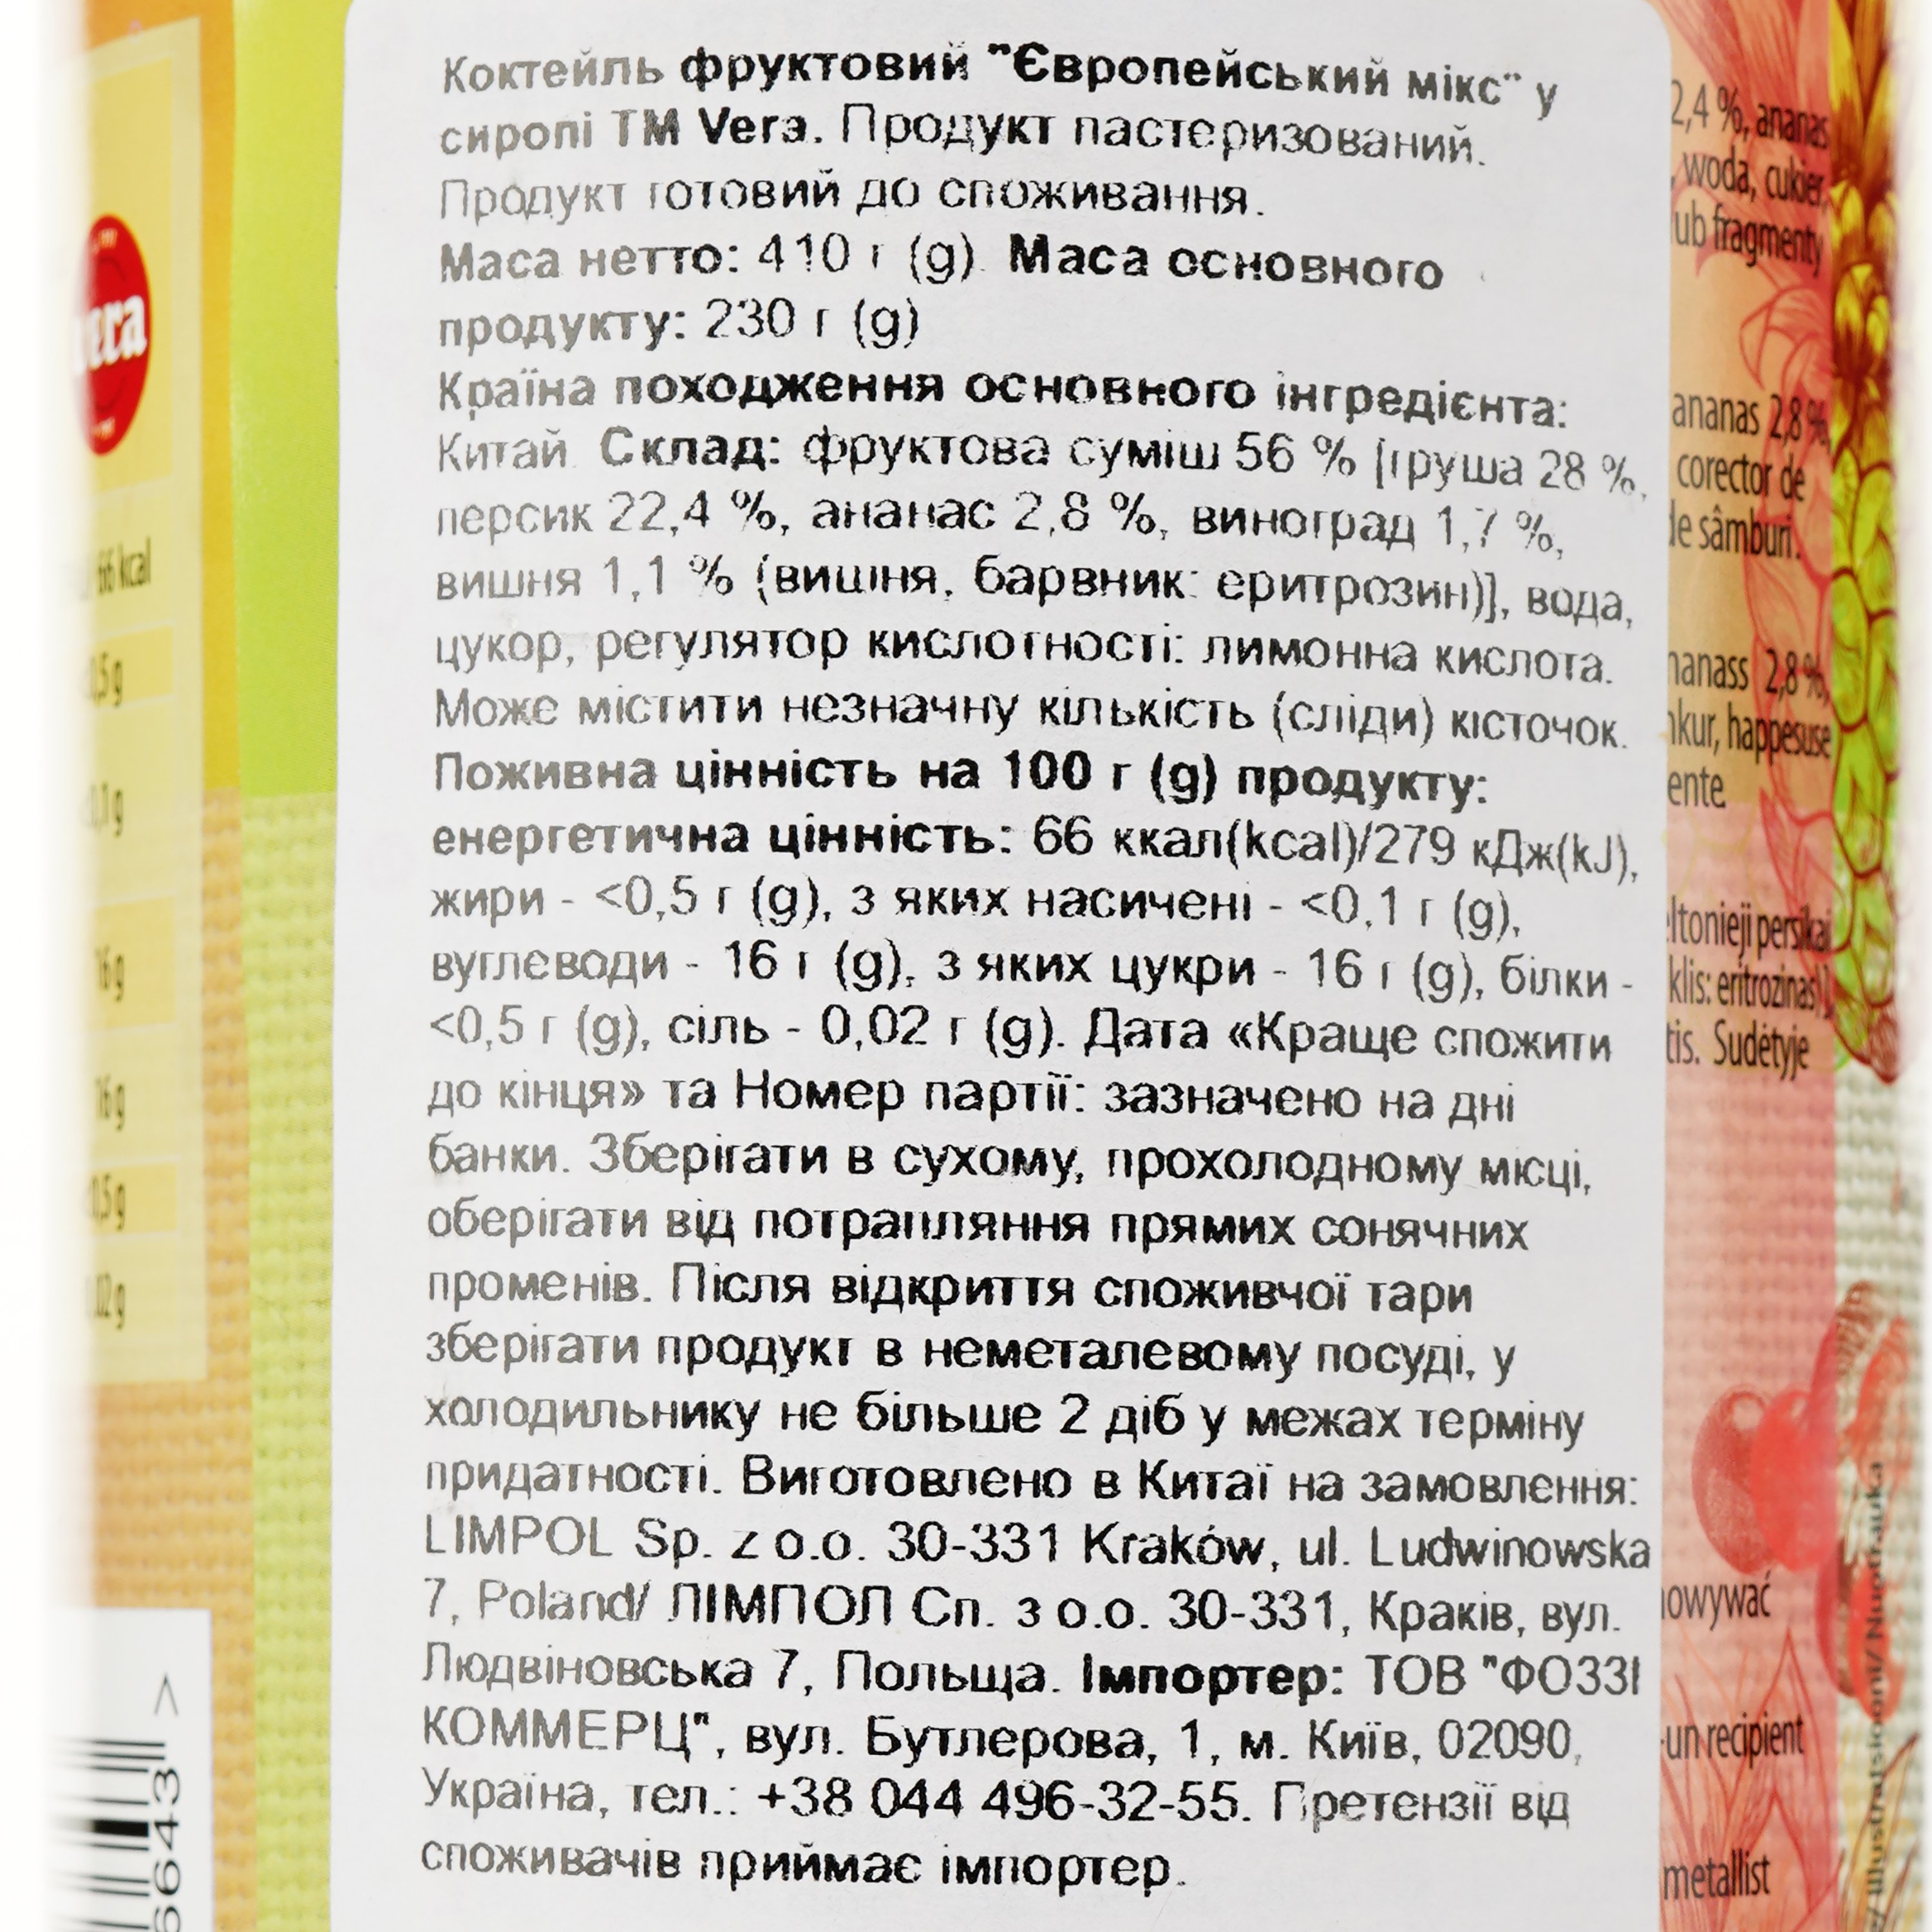 Коктейль Vera Koktajl Owocowy, фруктовый микс в сиропе, 410 г - фото 3